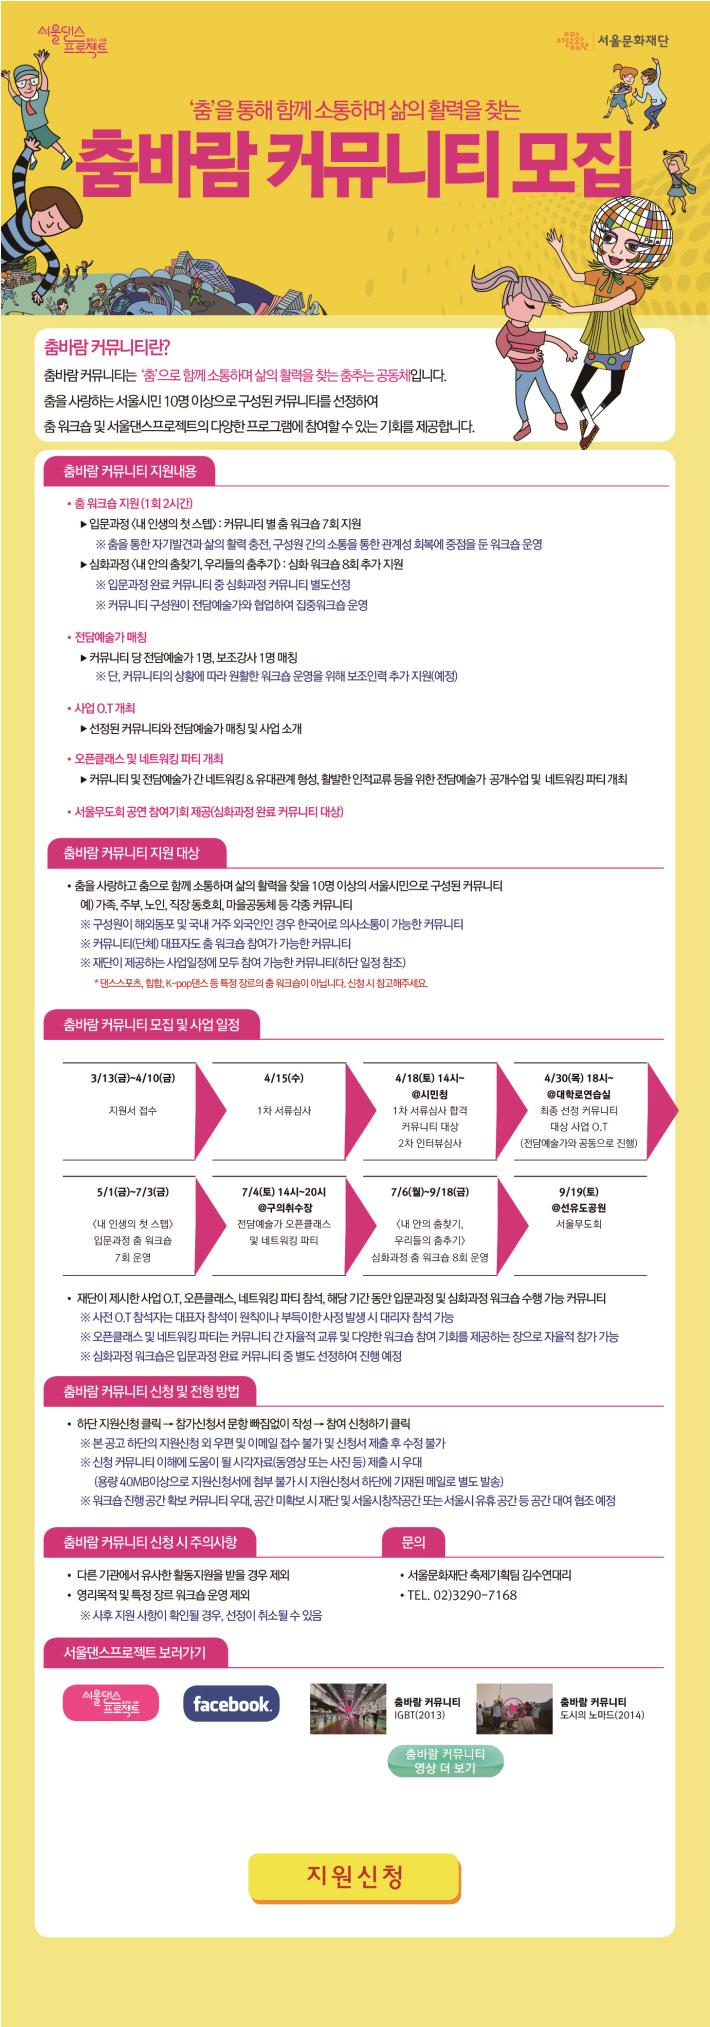 2015 서울댄스프로젝트 춤바람 커뮤니티 모집공고 